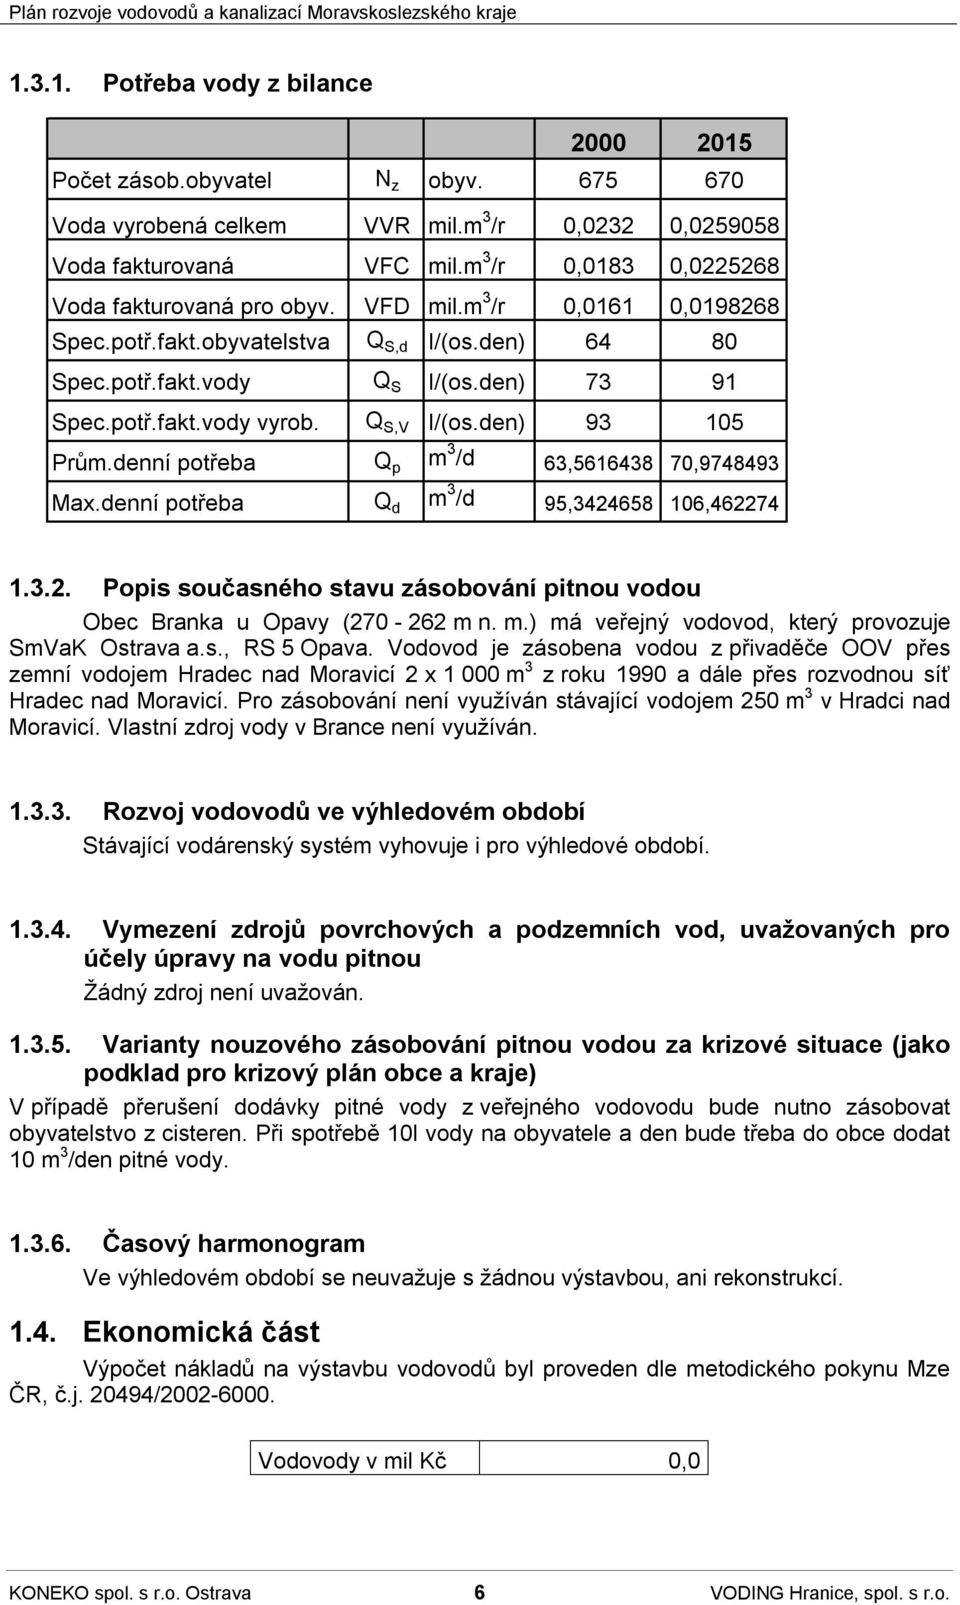 denní potřeba Q p m 3 /d 63,5616438 70,9748493 Max.denní potřeba Q d m 3 /d 95,3424658 106,462274 1.3.2. Popis současného stavu zásobování pitnou vodou Obec Branka u Opavy (270-262 m n. m.) má veřejný vodovod, který provozuje SmVaK Ostrava a.